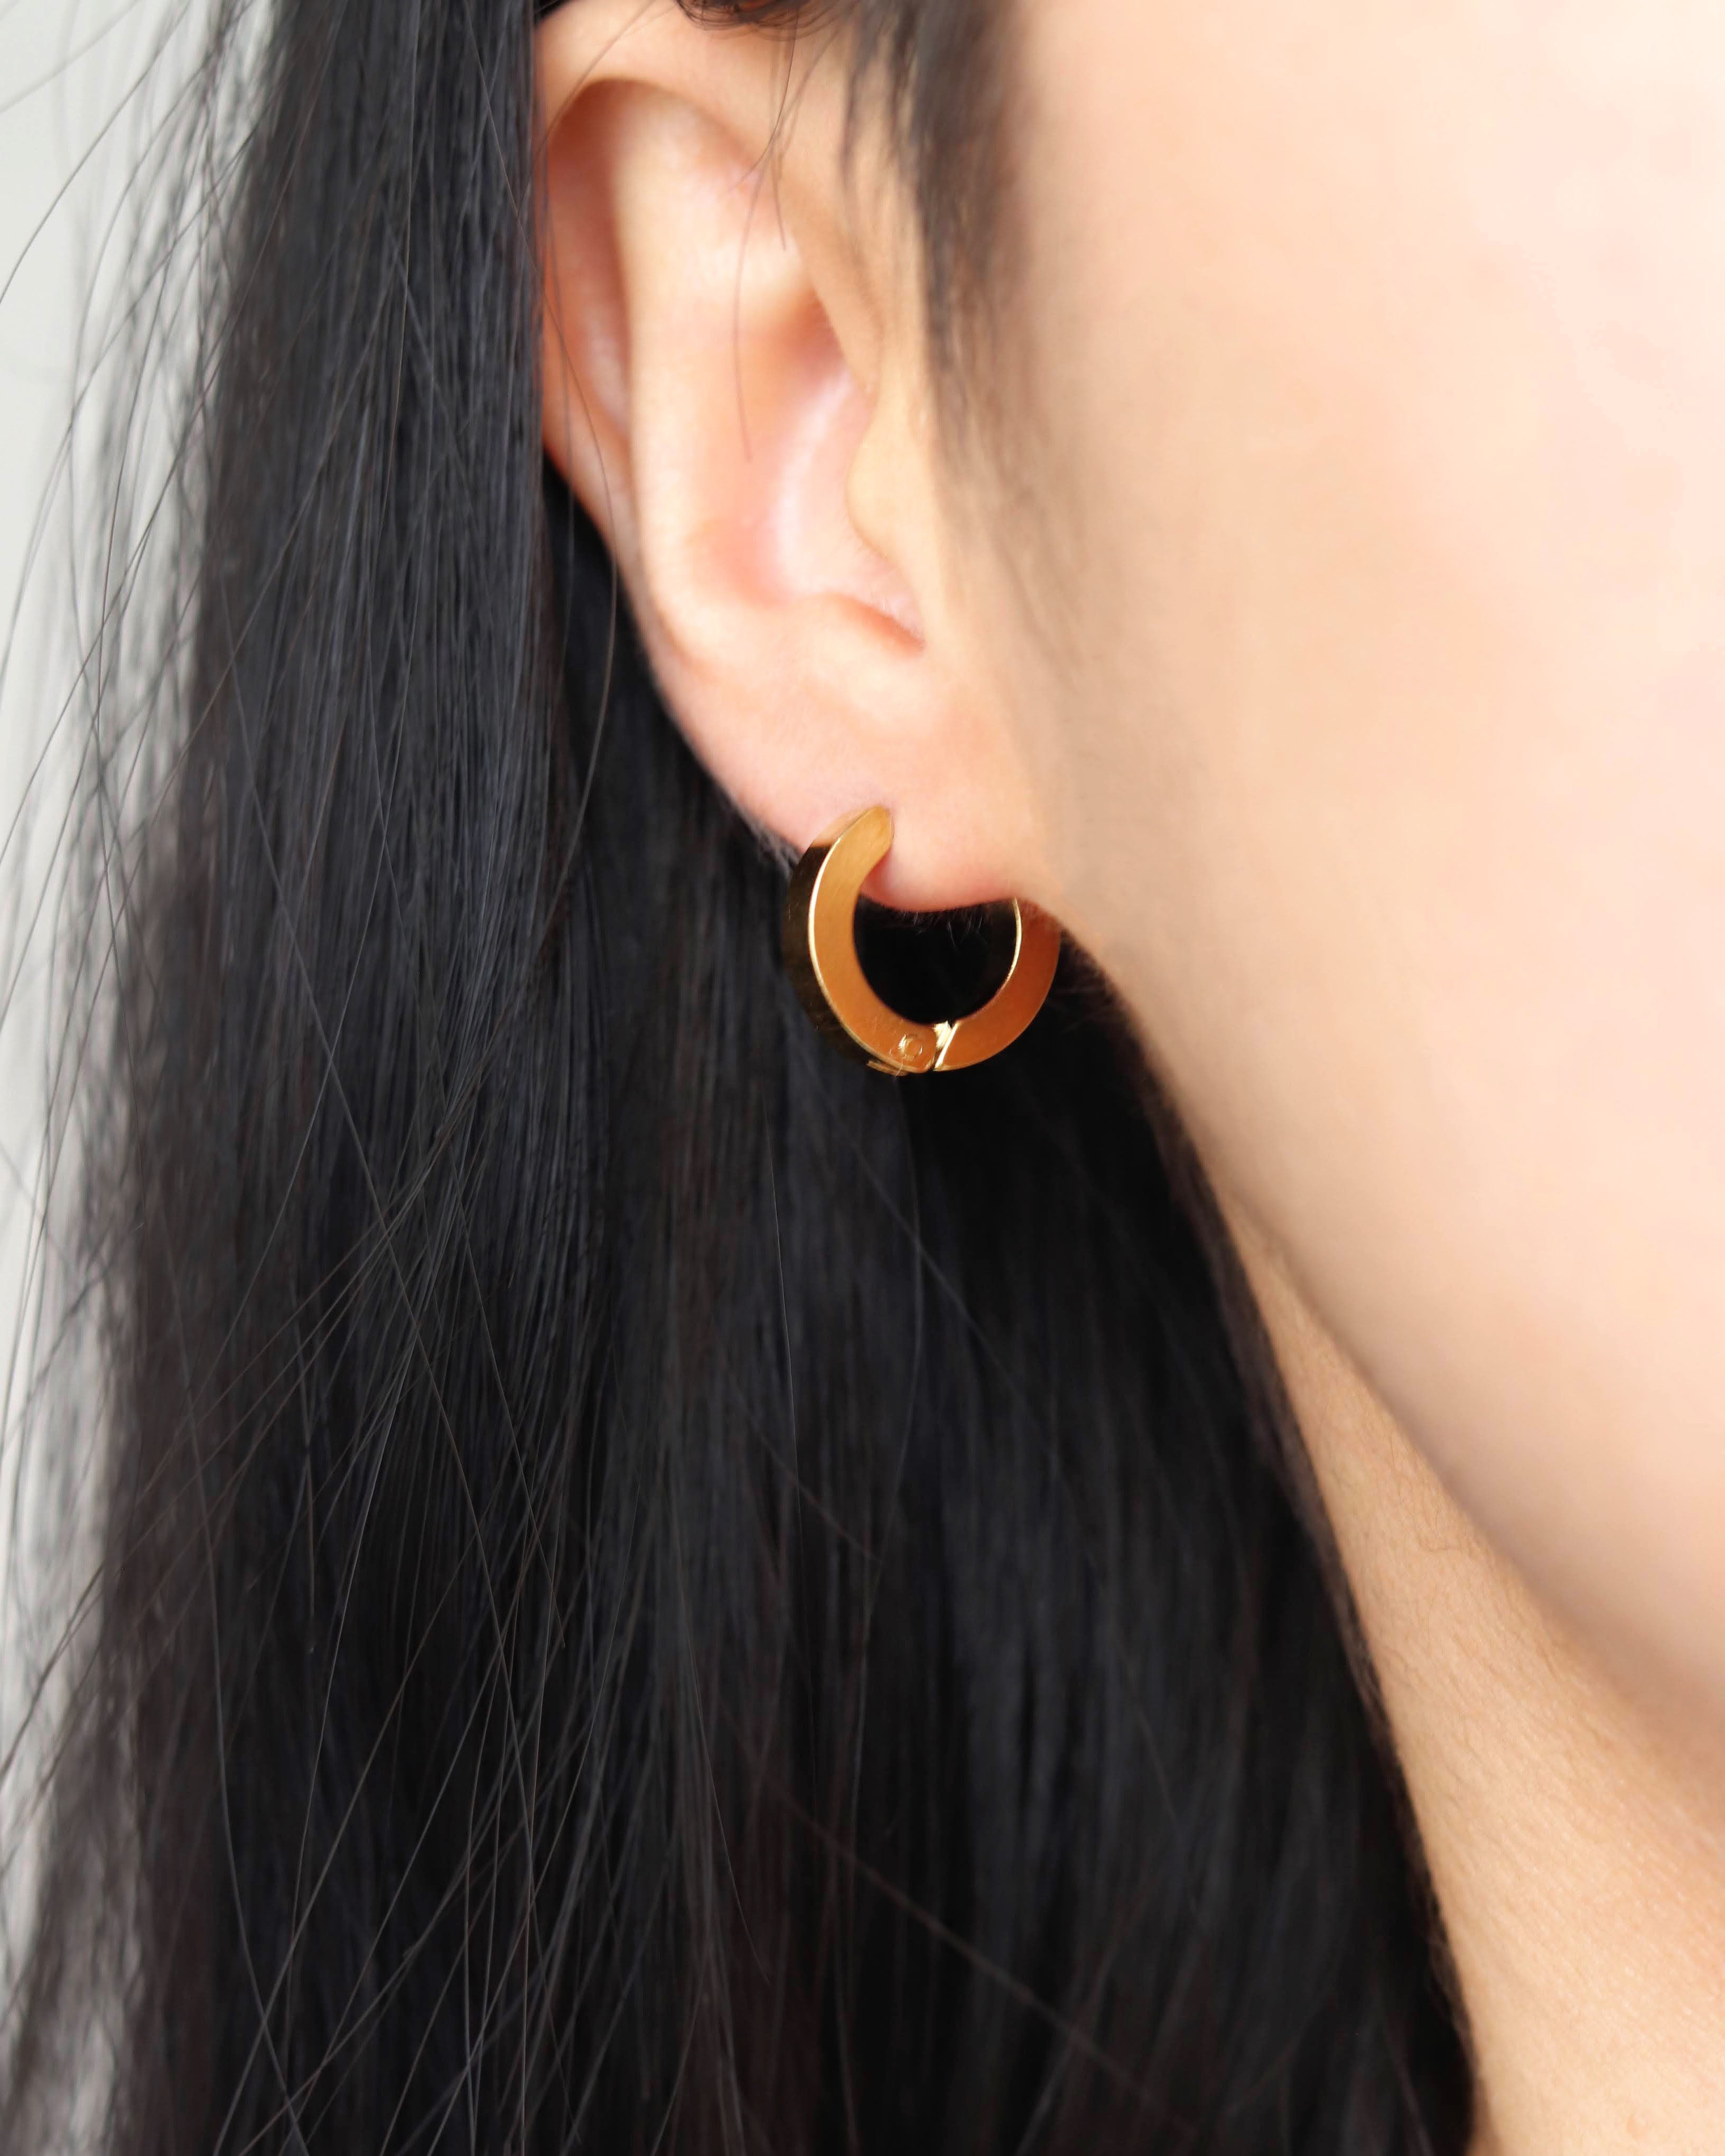 Shop Huggie Earrings Online in New Zealand | Francesca Jewellery